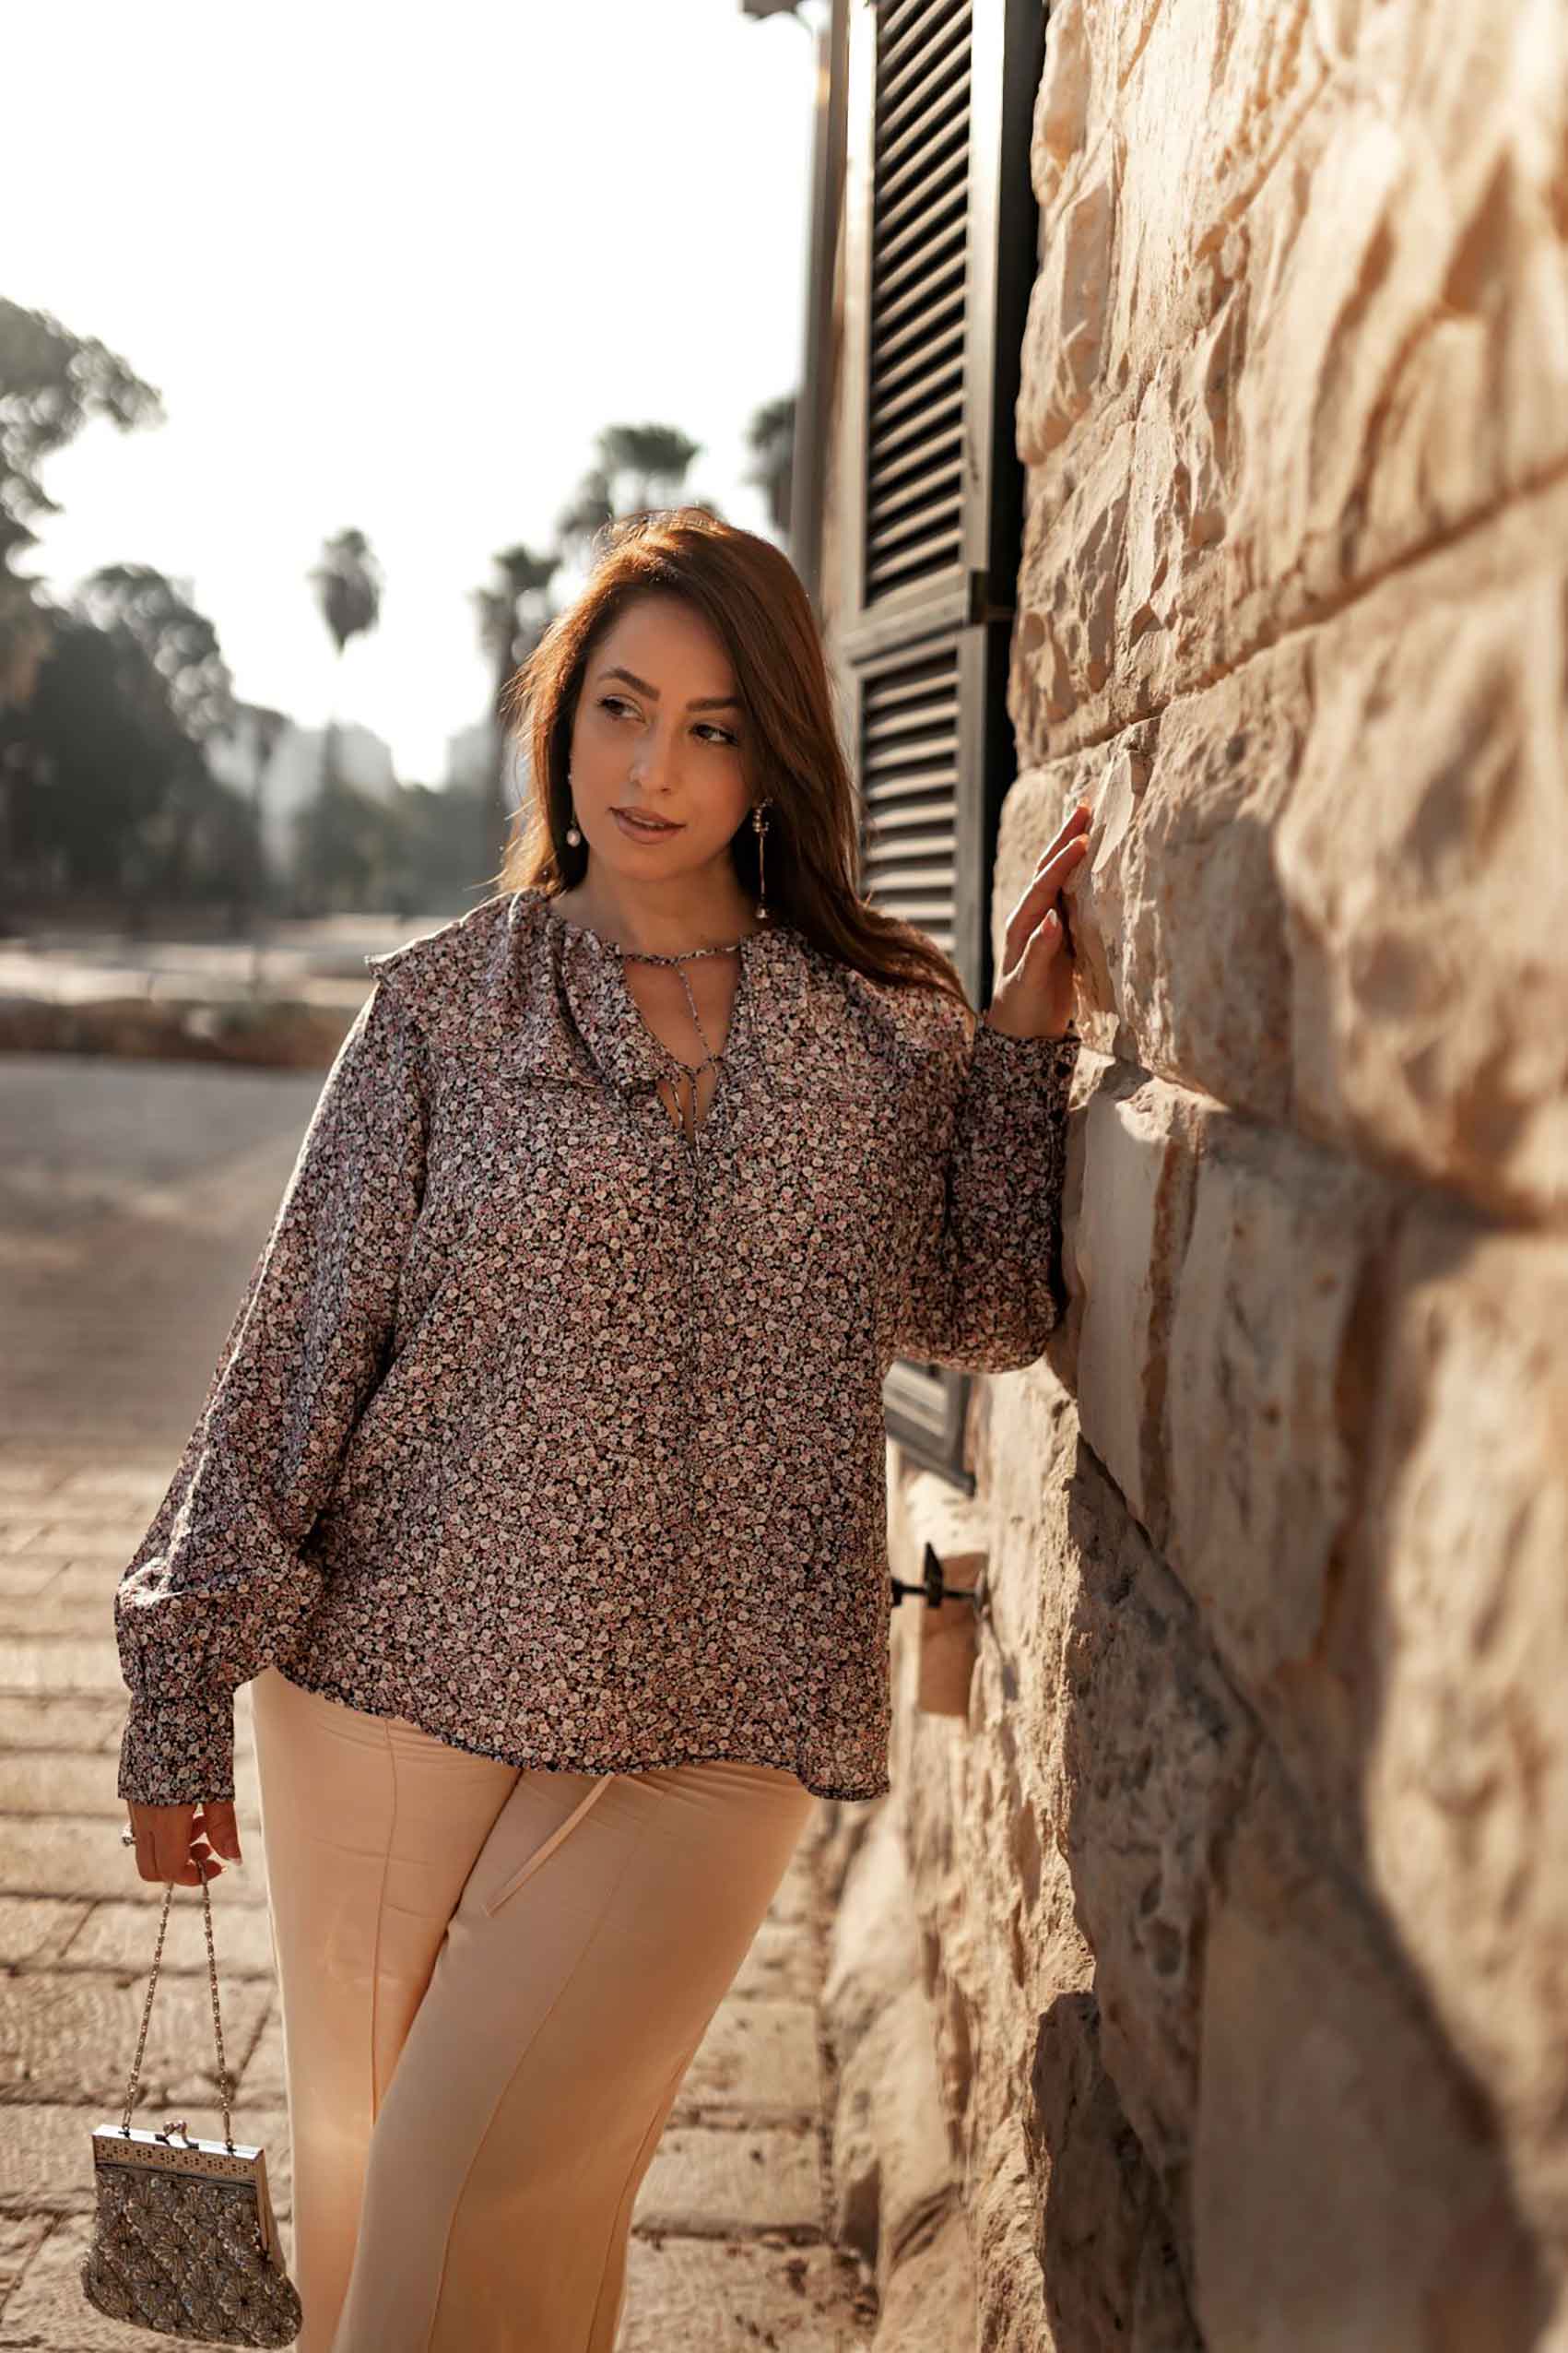 היום החמישי. טלי ארבל ל H&M ישראל, צילום: אירה גרמיצקיך חולצה פרחונית בשילוב מכנסי האריג הקרמיים ותיק וינטג' – מתכון מובטח למראה רומנטי עם אדג'.  - 1